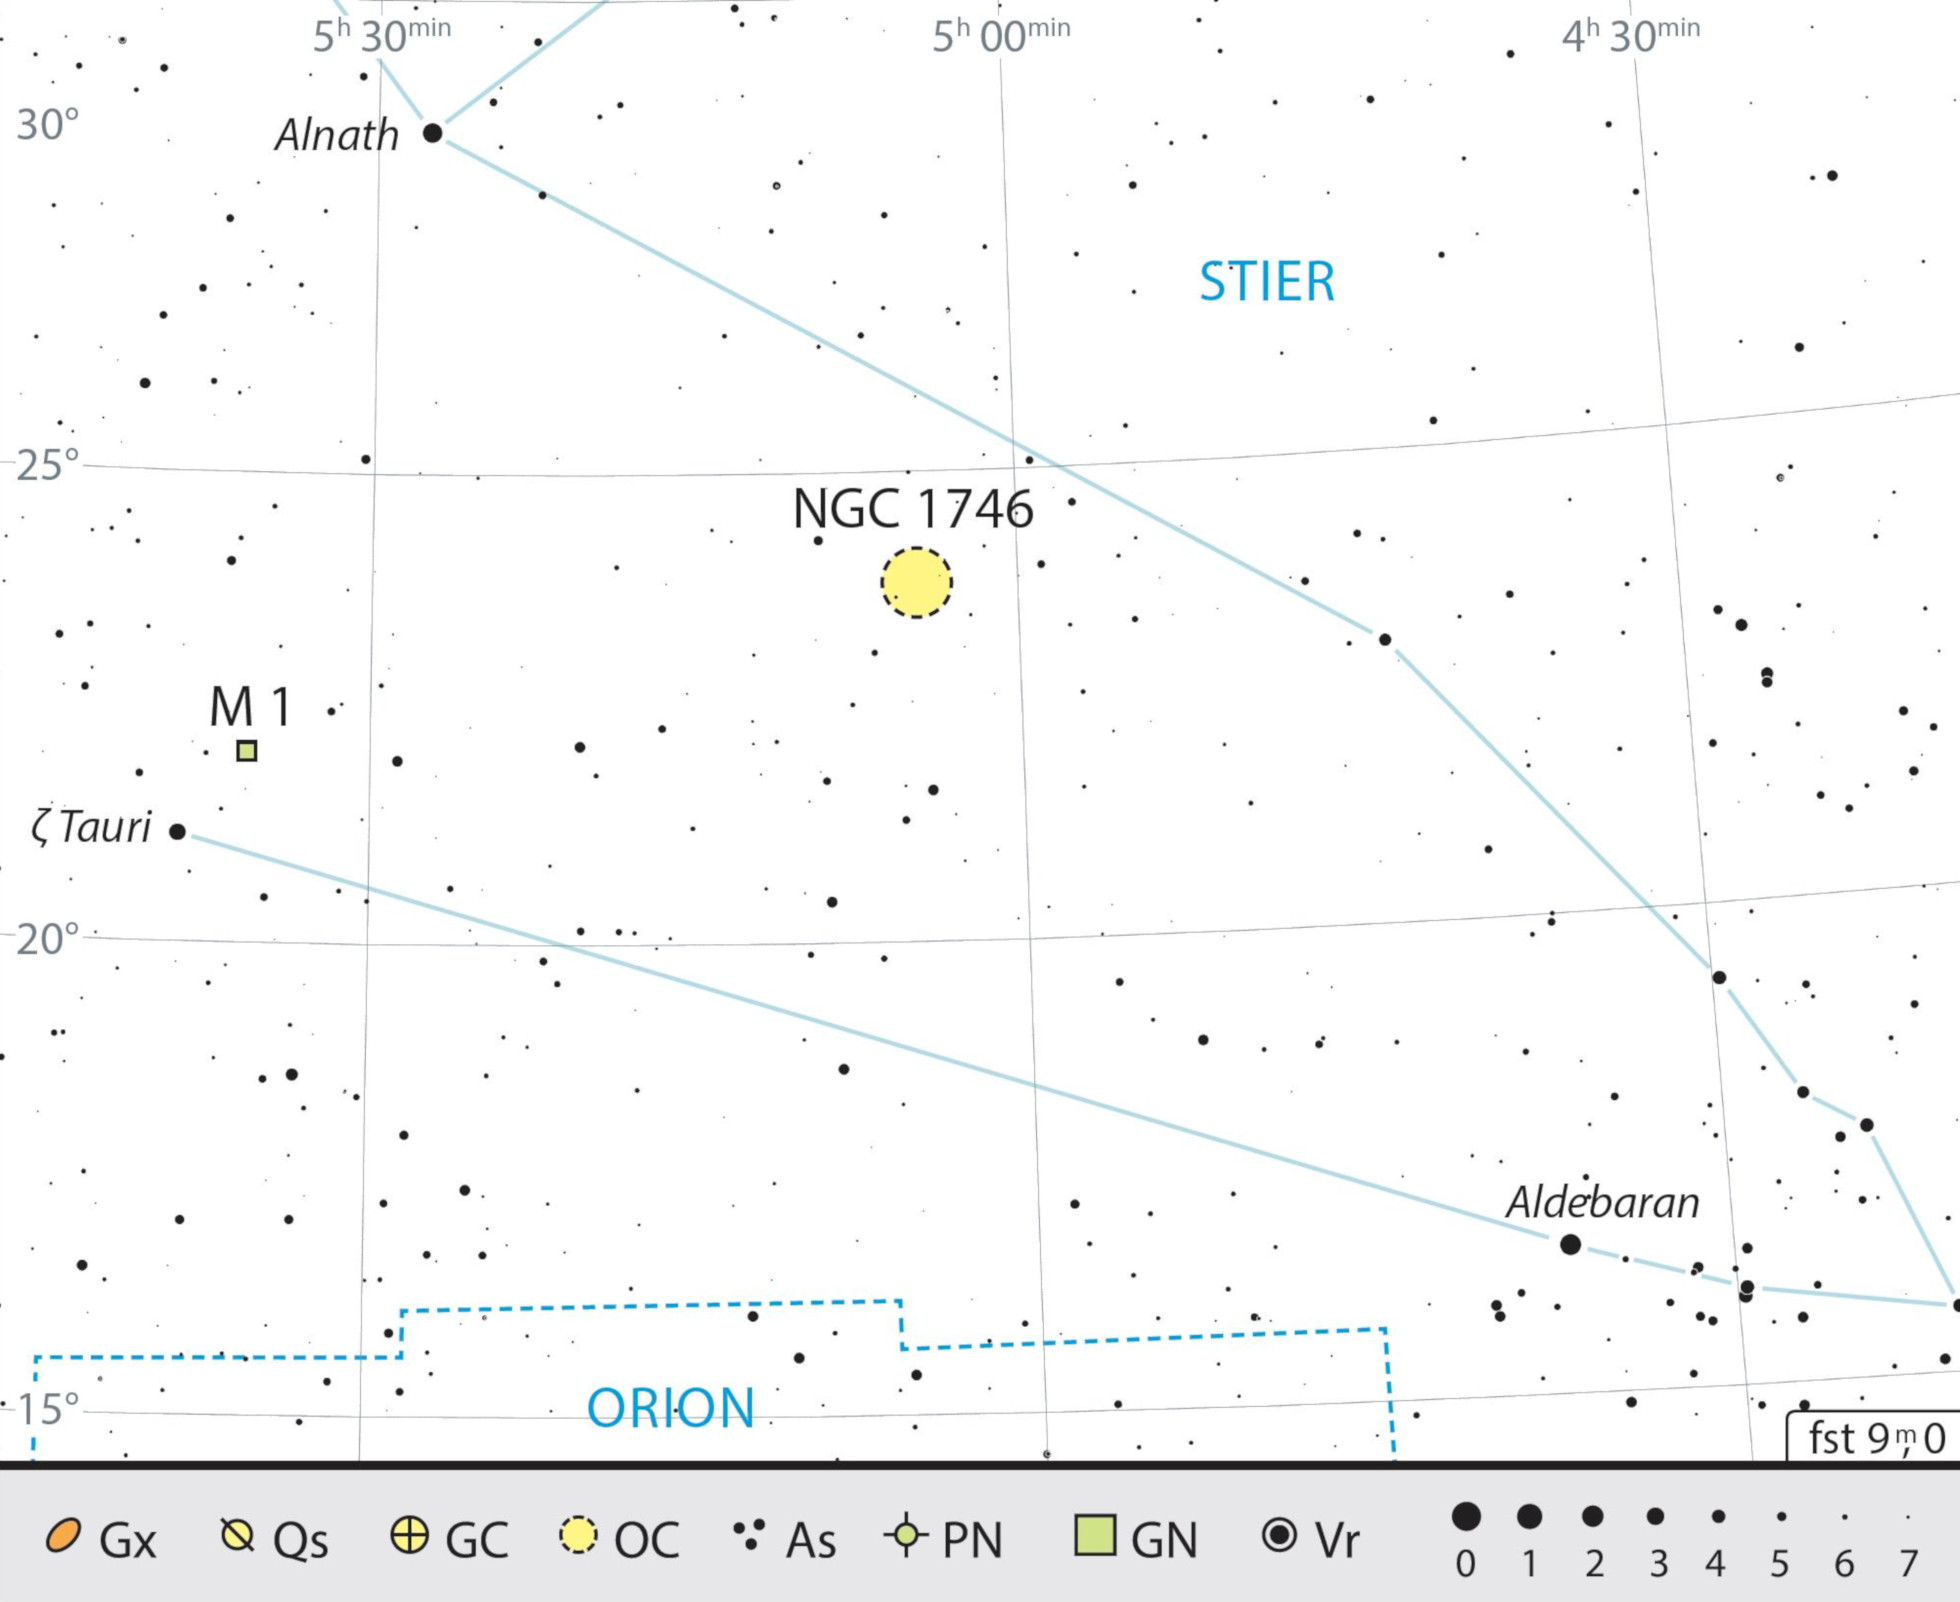 Mapa estelar de Messier 1 en la constelación de Tauro. J. Scholten